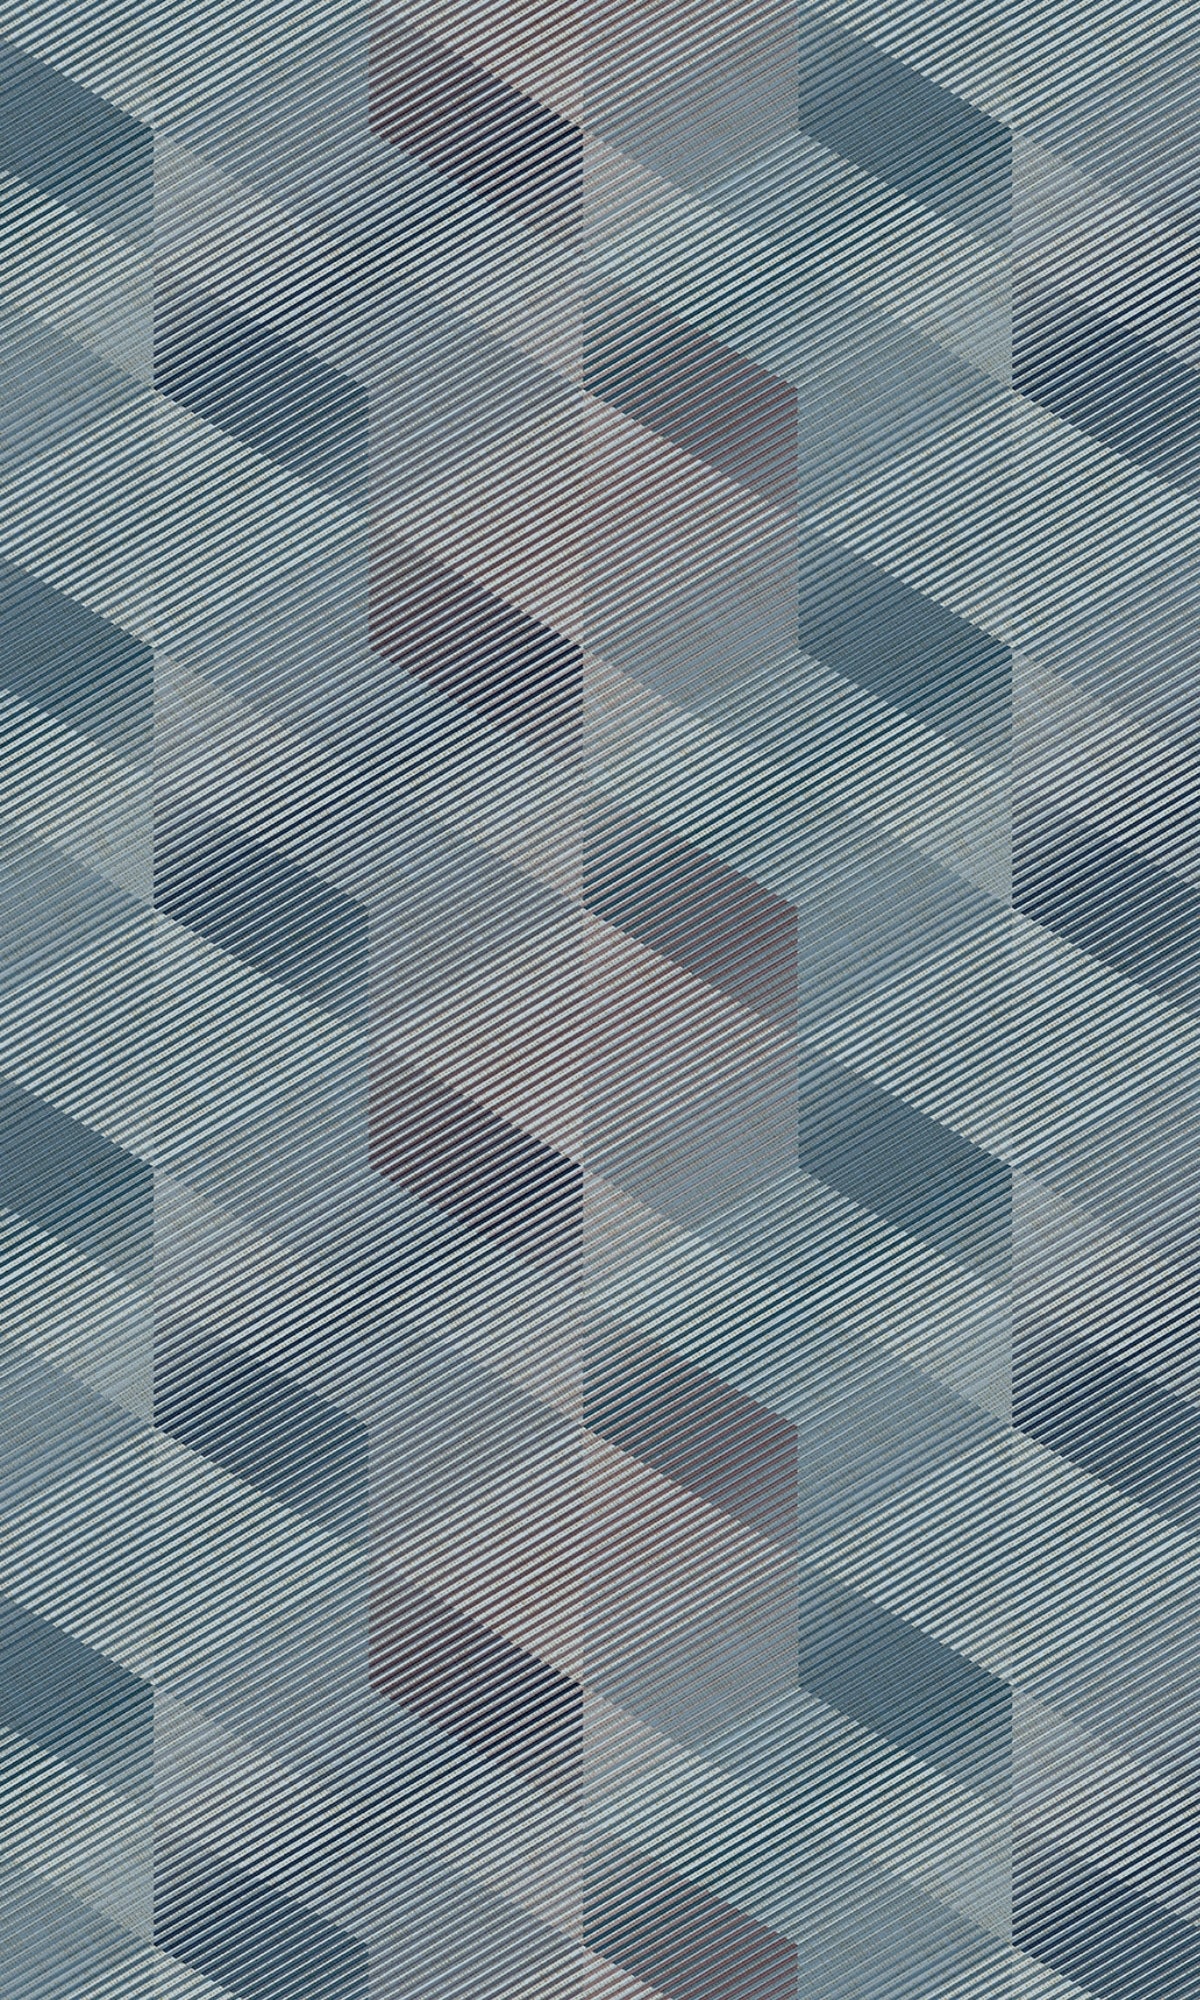 Petrol 3D Rhombus Stripe Geometric Wallpaper R8103